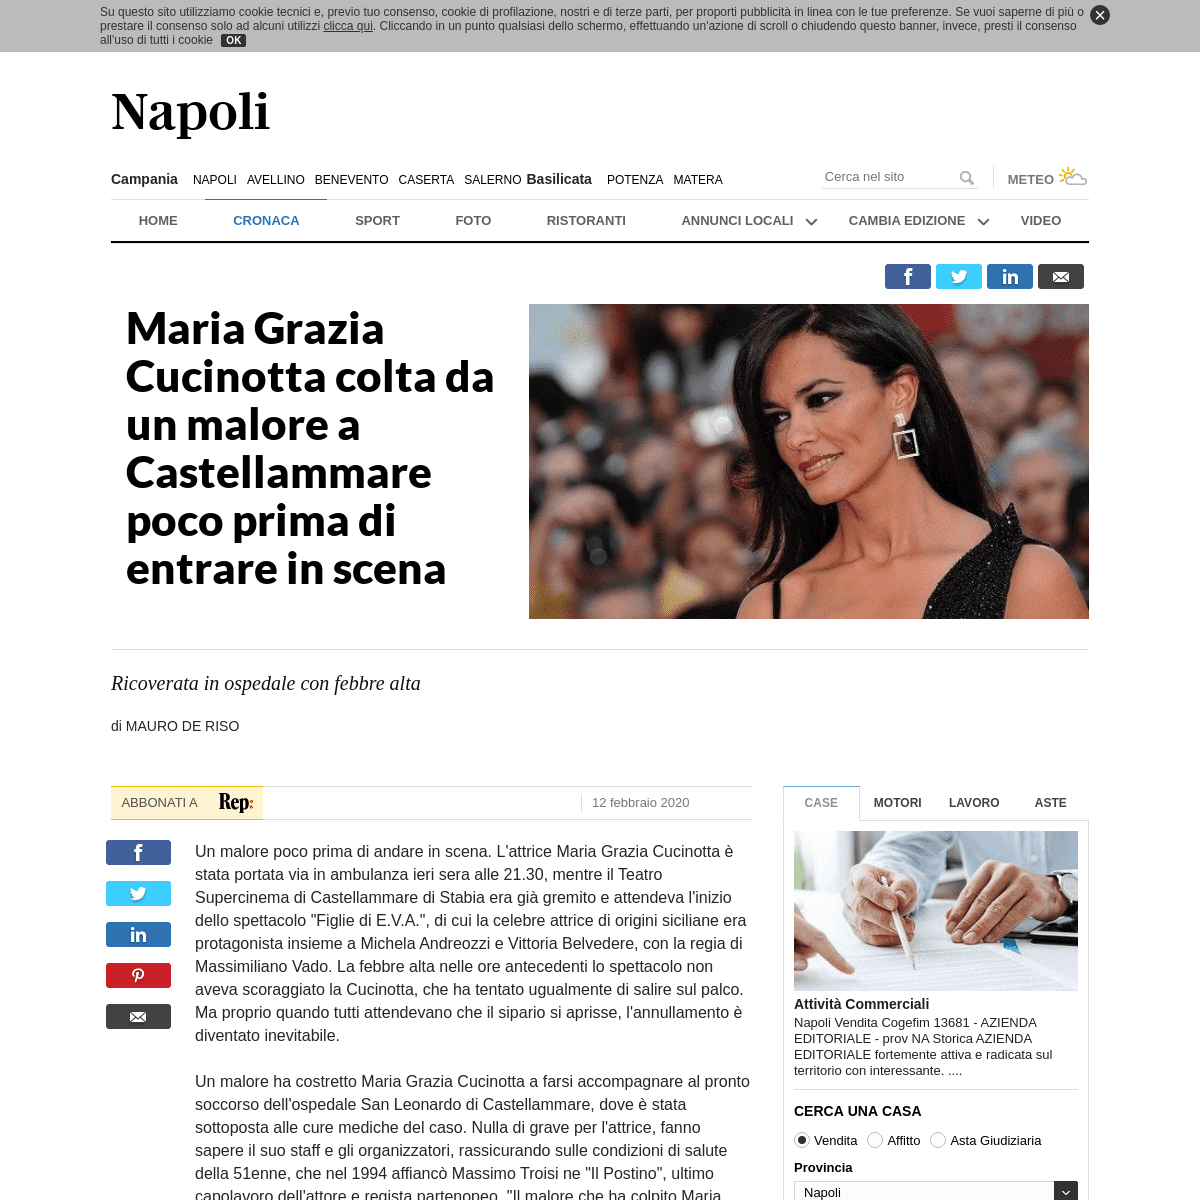 A complete backup of napoli.repubblica.it/cronaca/2020/02/12/news/maria_grazia_cucinotta_colta_da_un_malore_a_castellammare_poco